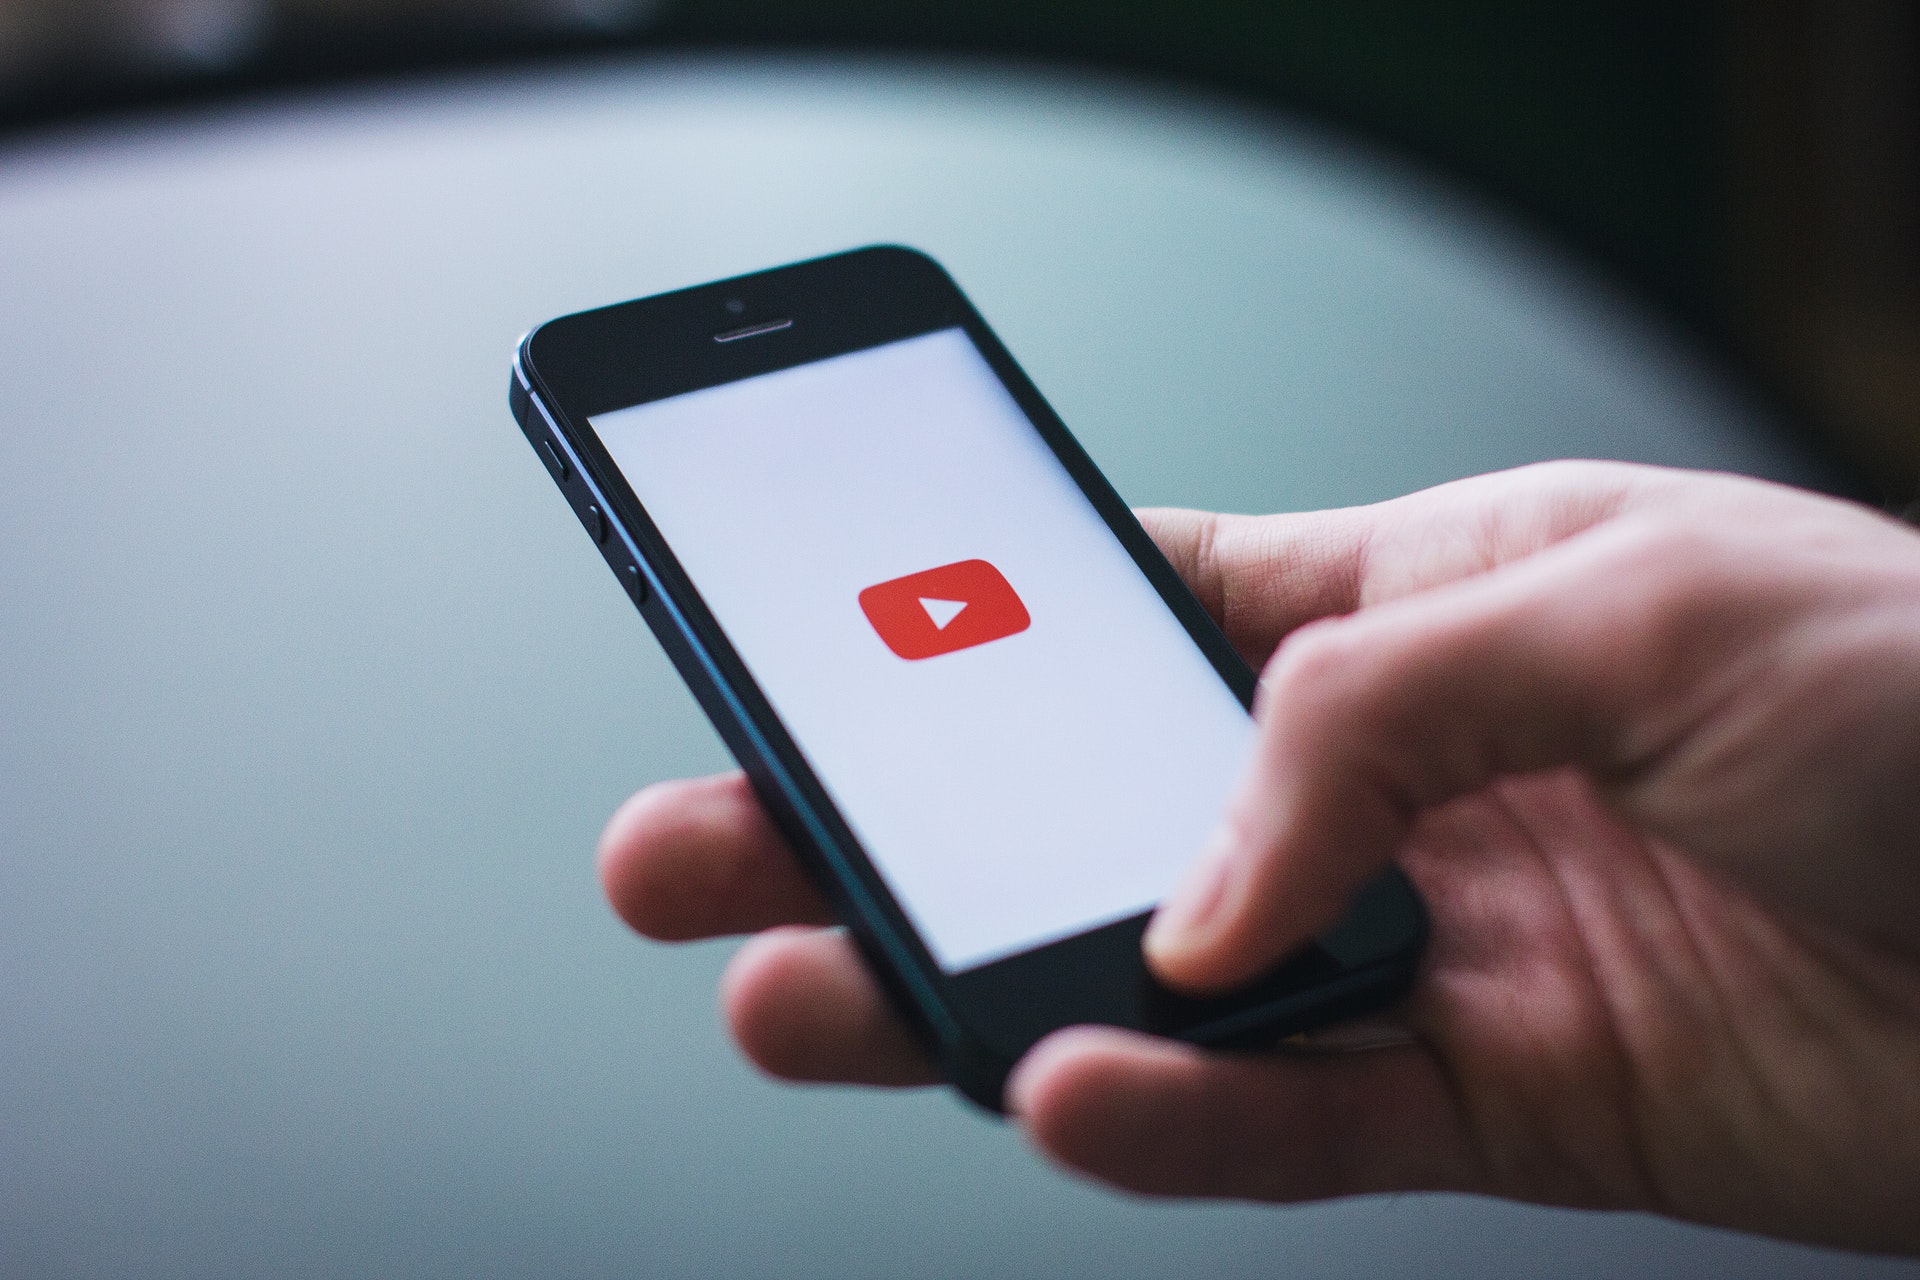 YouTube dla reklamodawców - zarządzanie bezpieczeństwem i spójnością marki Reklama YouTube dla reklamodawcow zarzadzanie bezpieczenstwem i spojnoscia marki